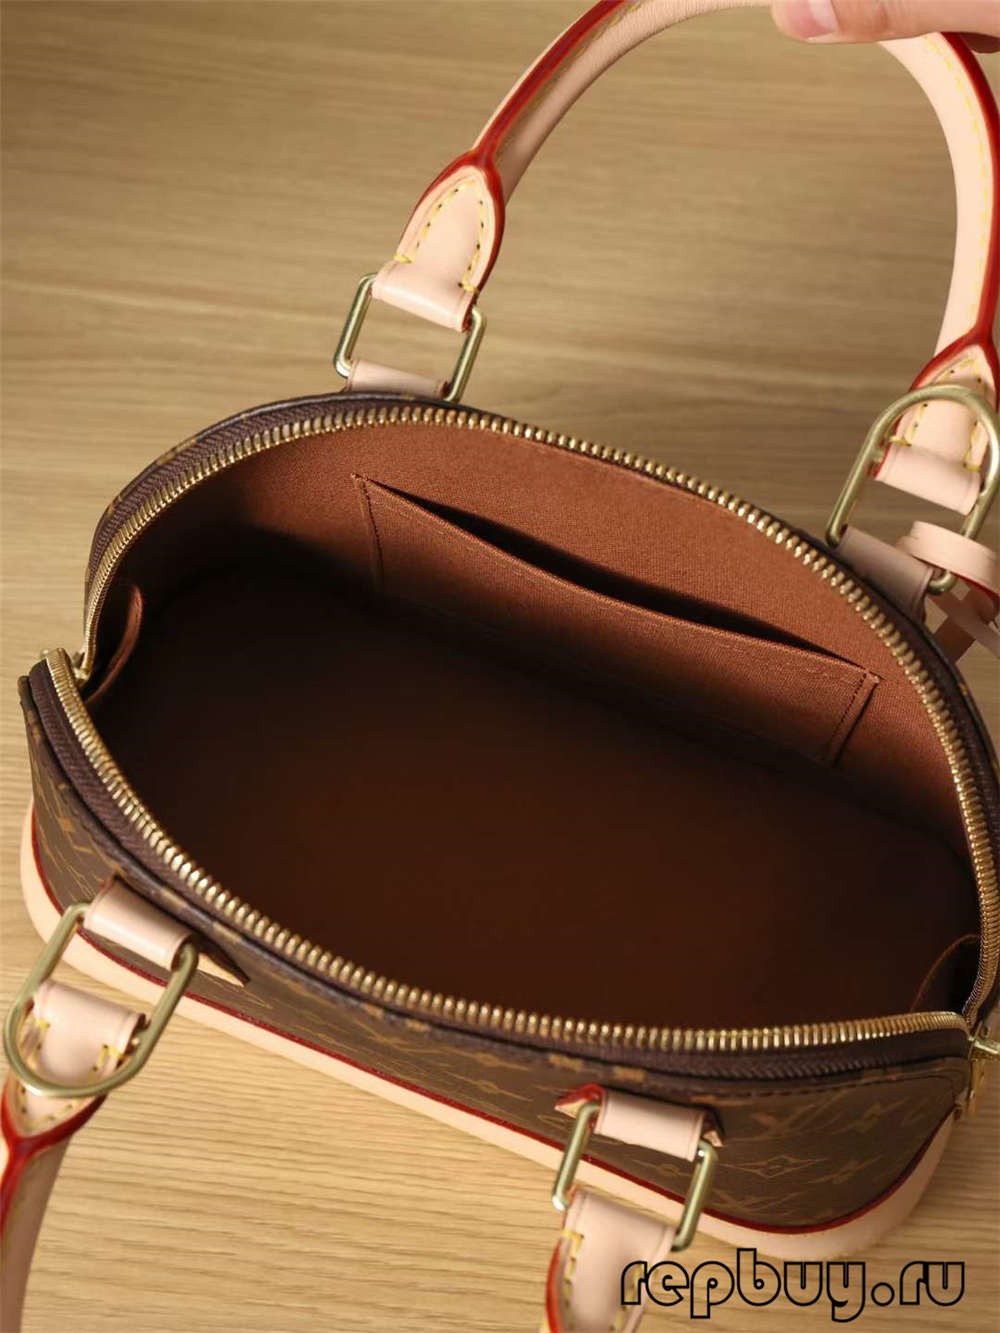 Луј Витон M53152 Алма ББ чанти со врвен квалитет (Специјални 2022 година) - Онлајн продавница за лажни Louis Vuitton торби со најдобар квалитет, дизајнерска торба со реплика ru